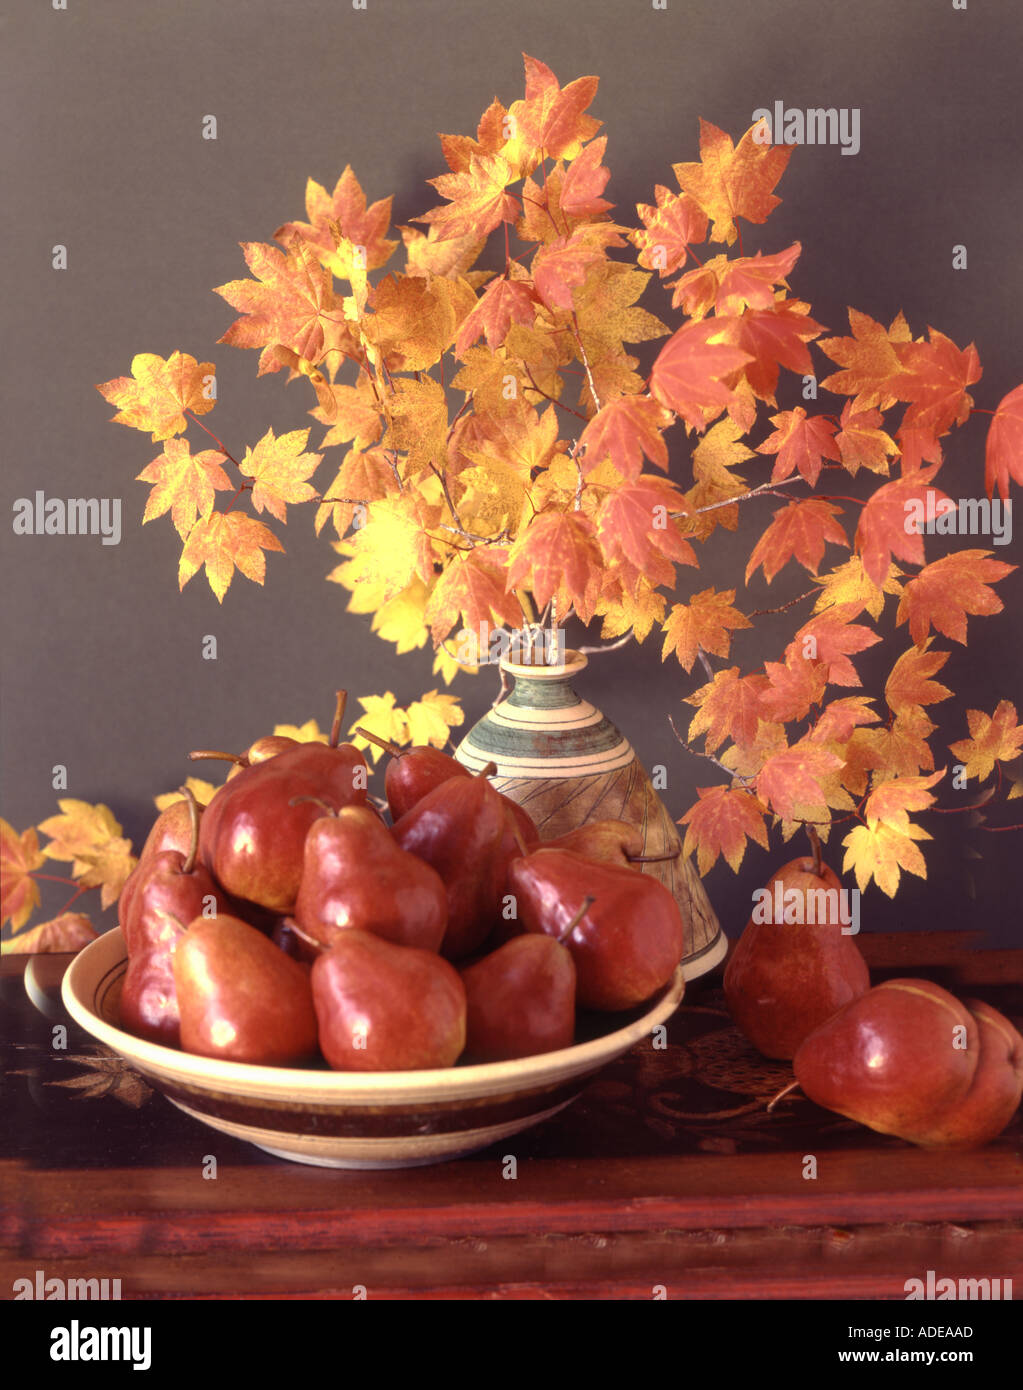 Saison d'automne de la vie toujours rapide illuminé avec des branches d'érable de vigne et les poires en poterie céramique raku magnifiquement tiré Banque D'Images